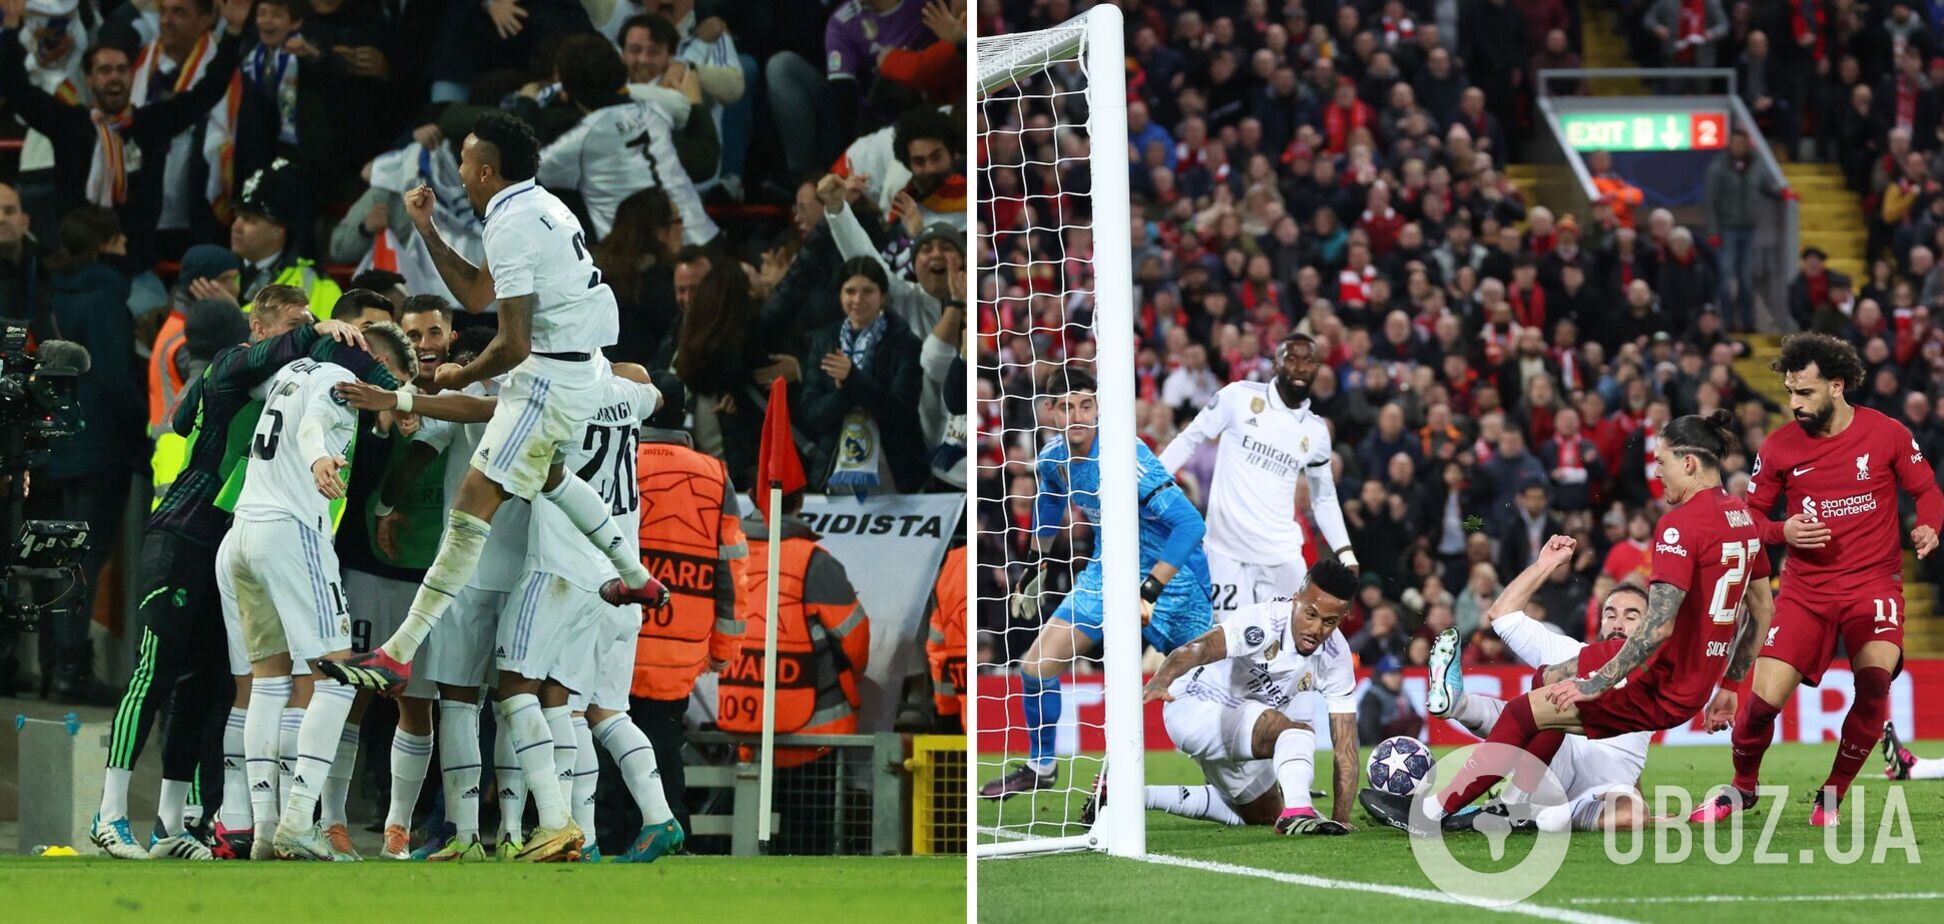 'Реал' – 'Ливерпуль': где смотреть матч 1/8 финала Лиги чемпионов